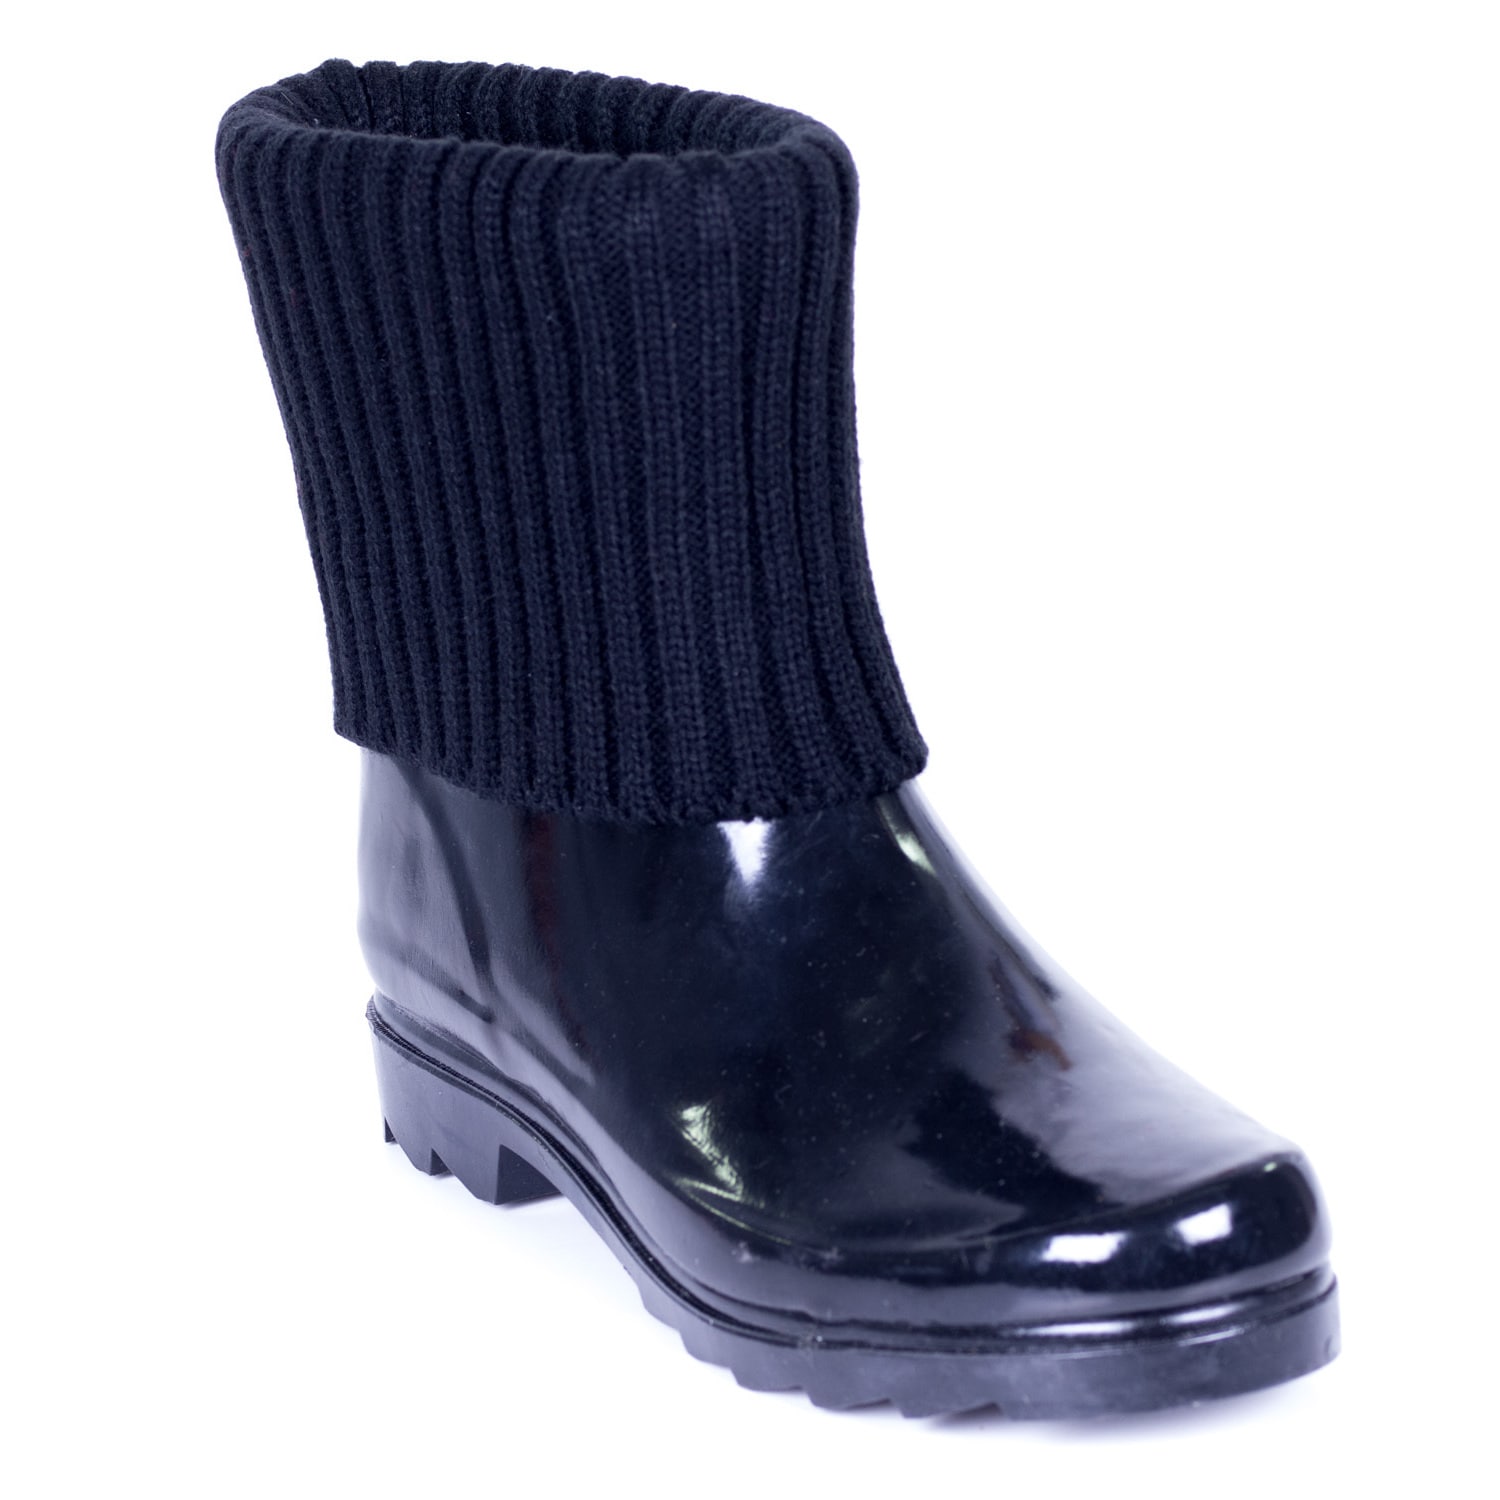 women's short ankle rain boots